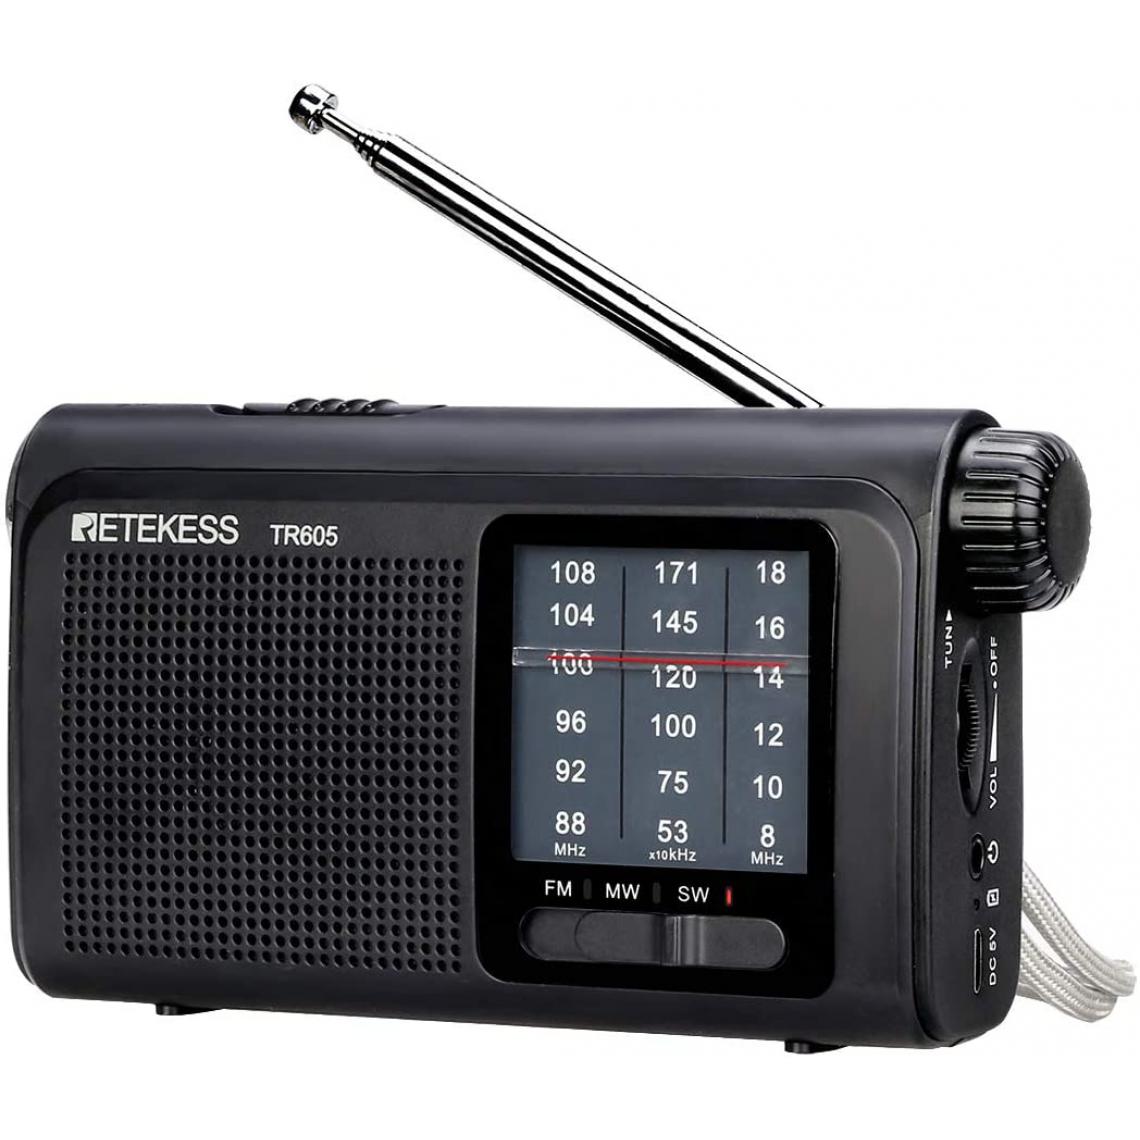 Retekess - radio portable FM/AM/SW avec batterie Rechargeable noir - Radio